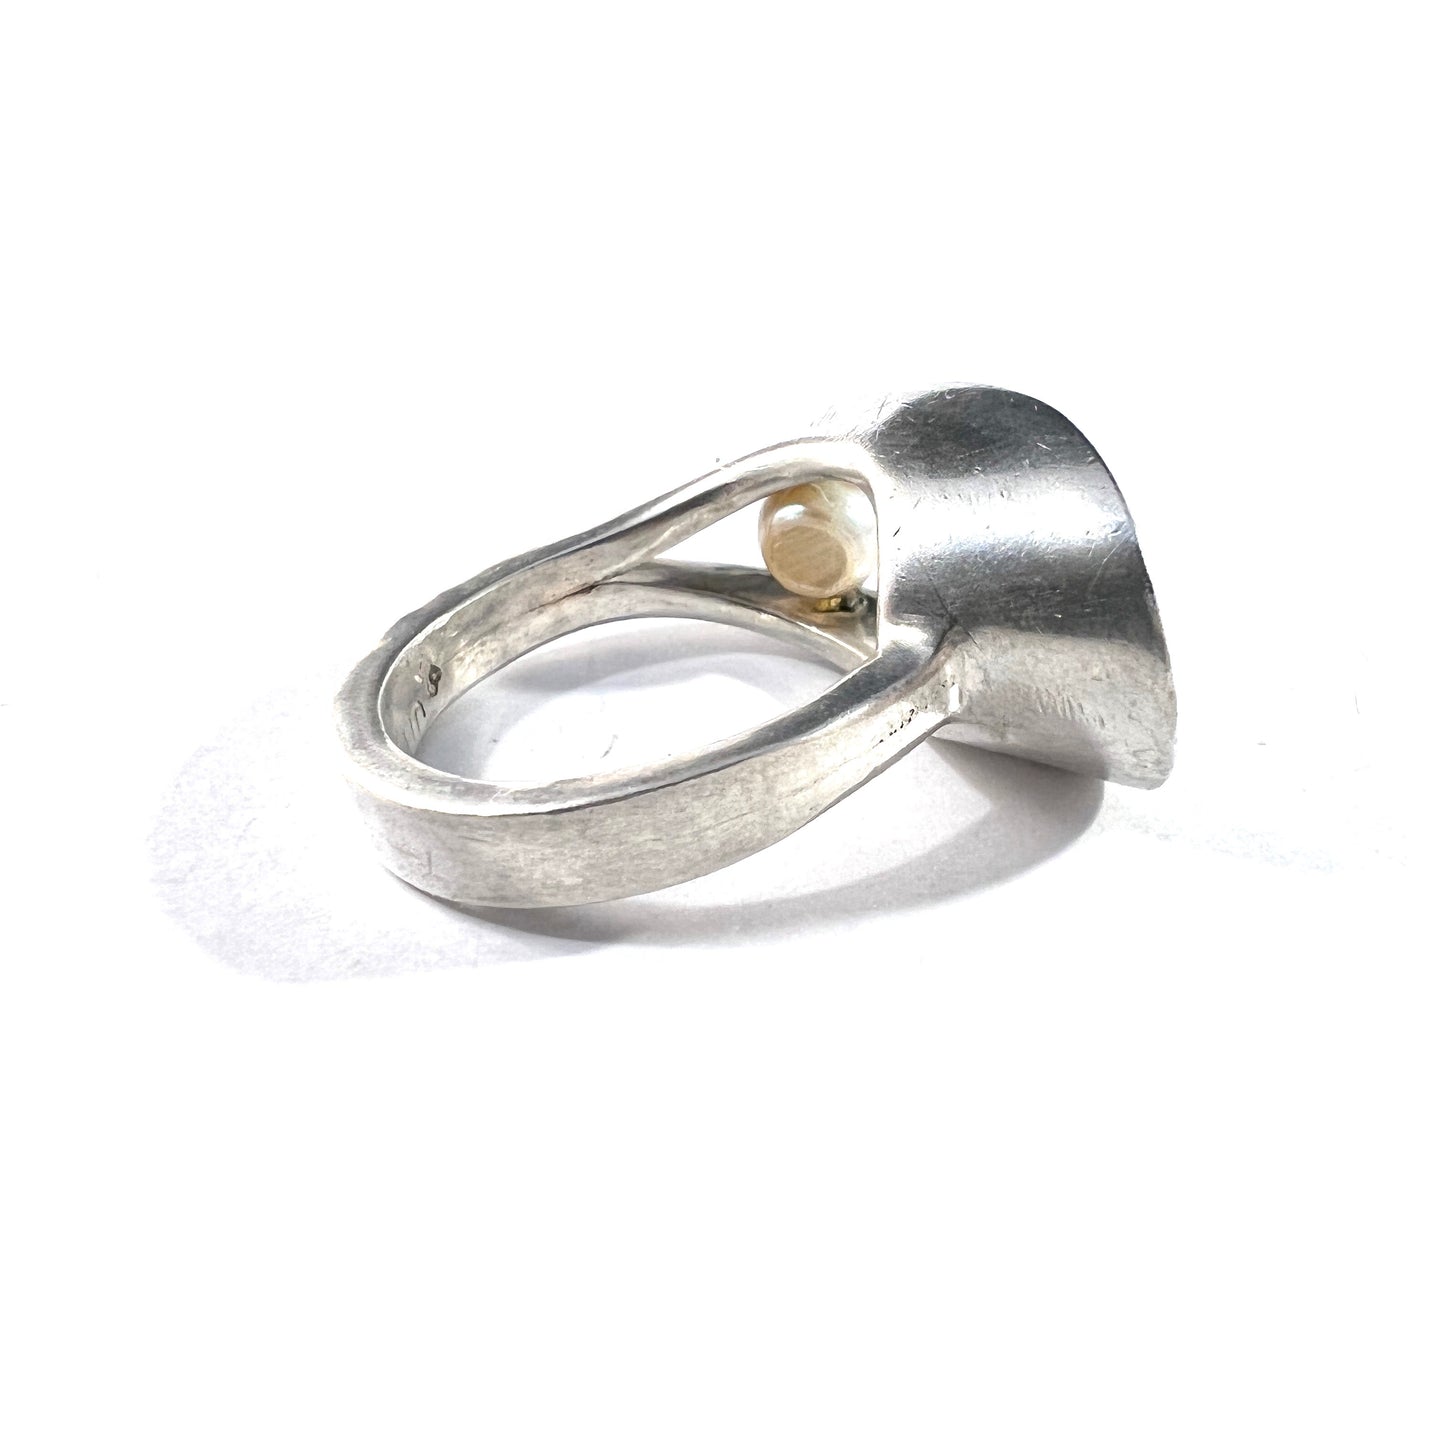 Maker JLP, USA c 1960s Vintage Modernist Sterling Silver Pearl Ring.